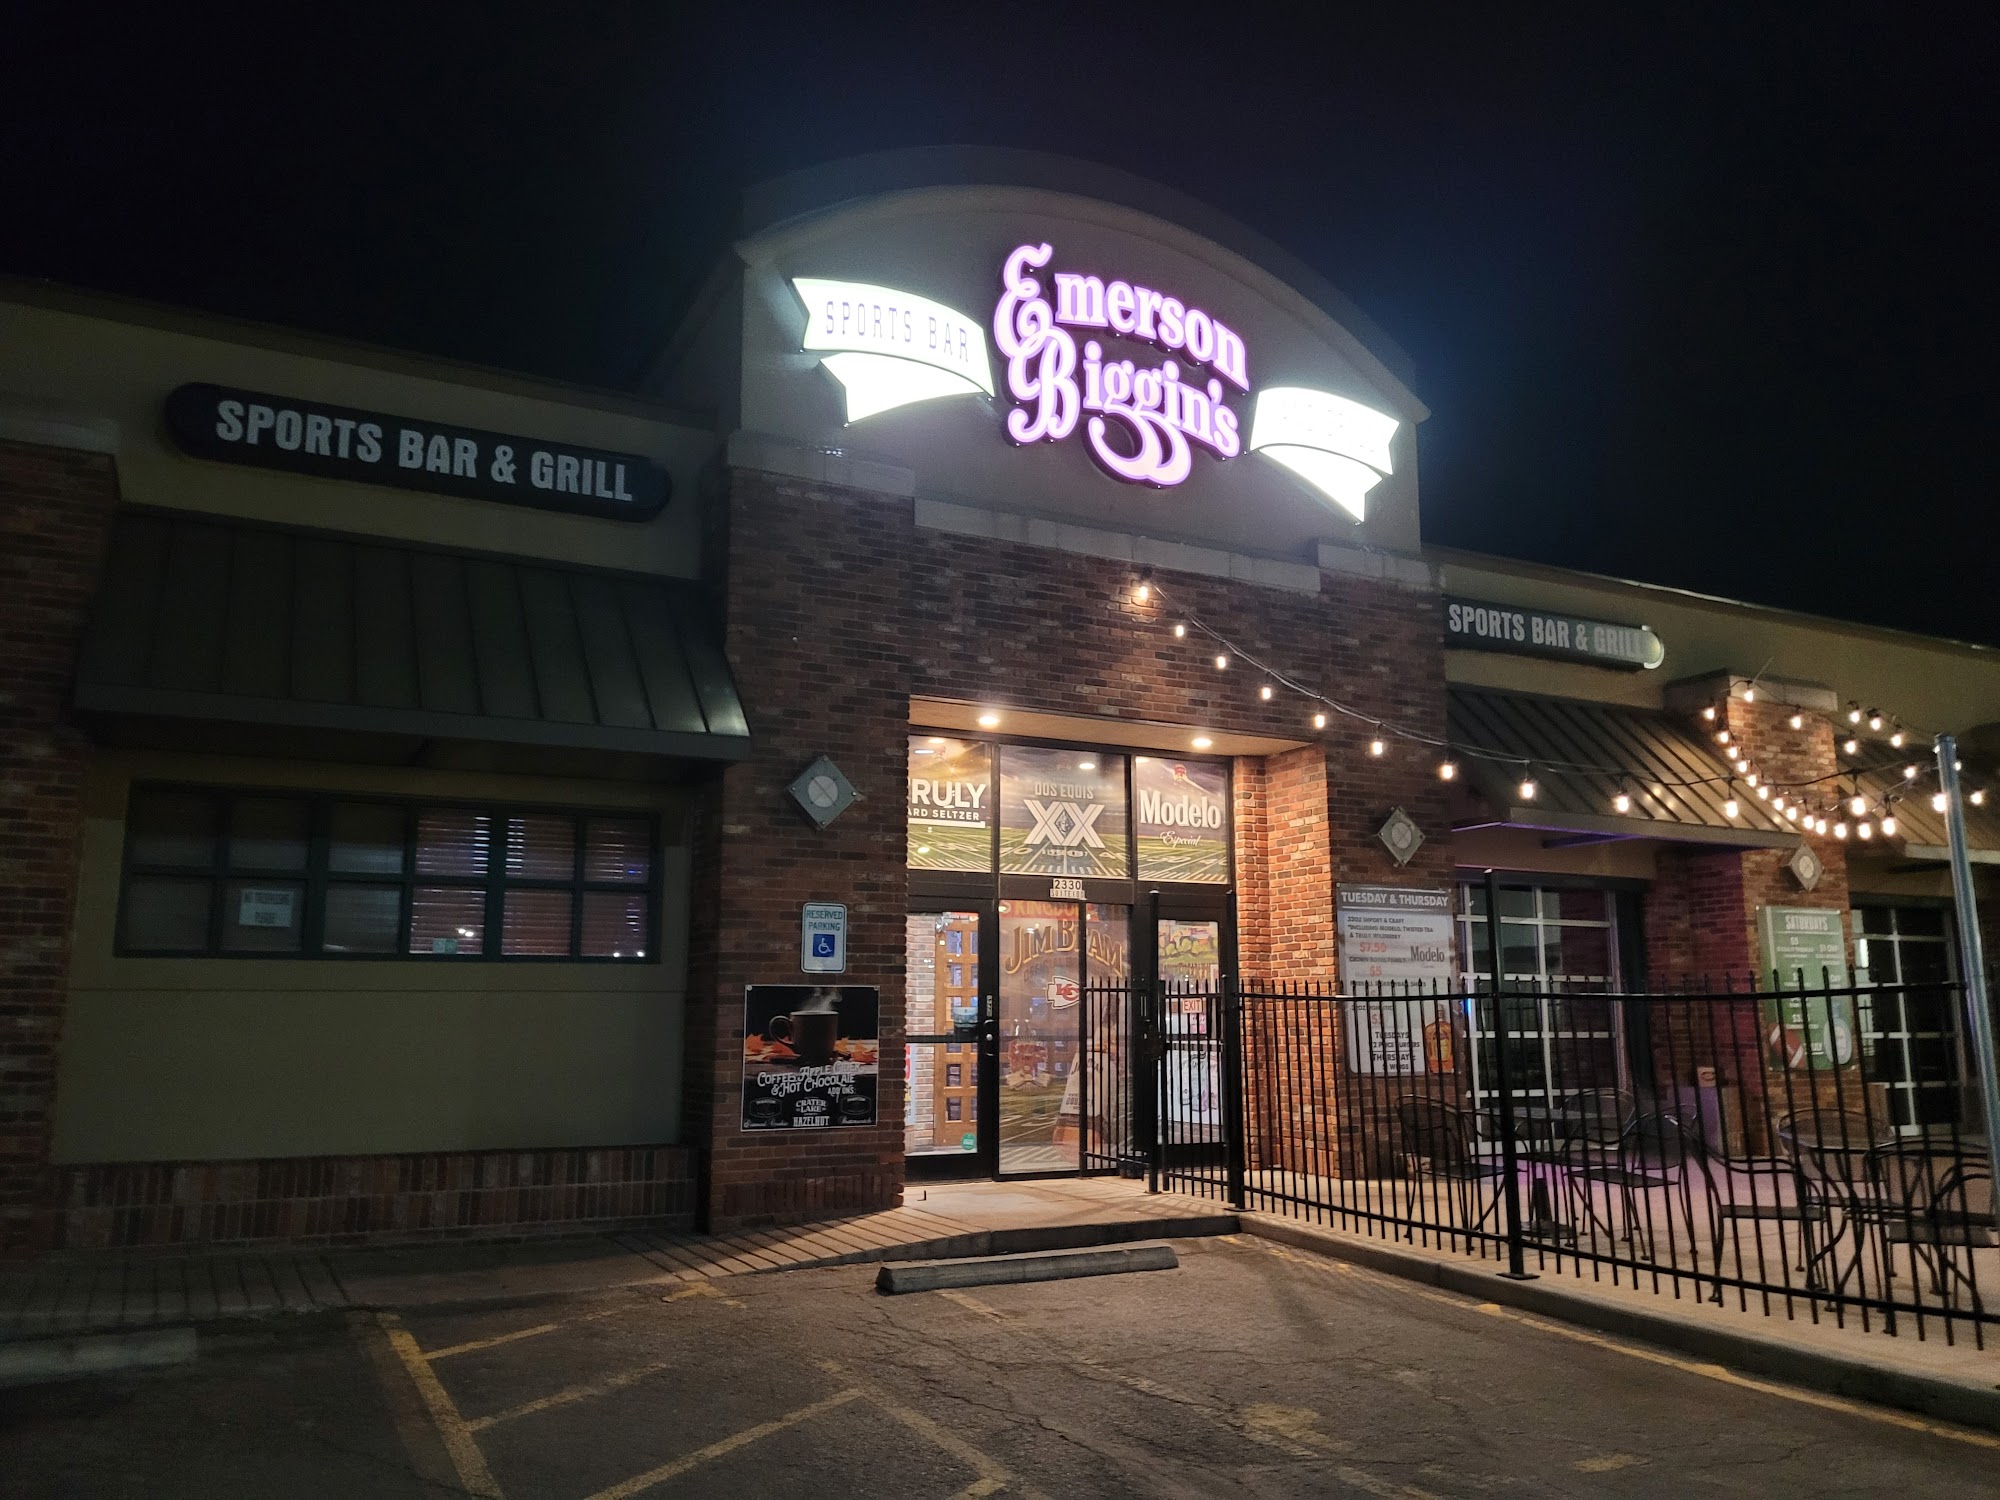 Emerson Biggin's Sports Bar & Grill